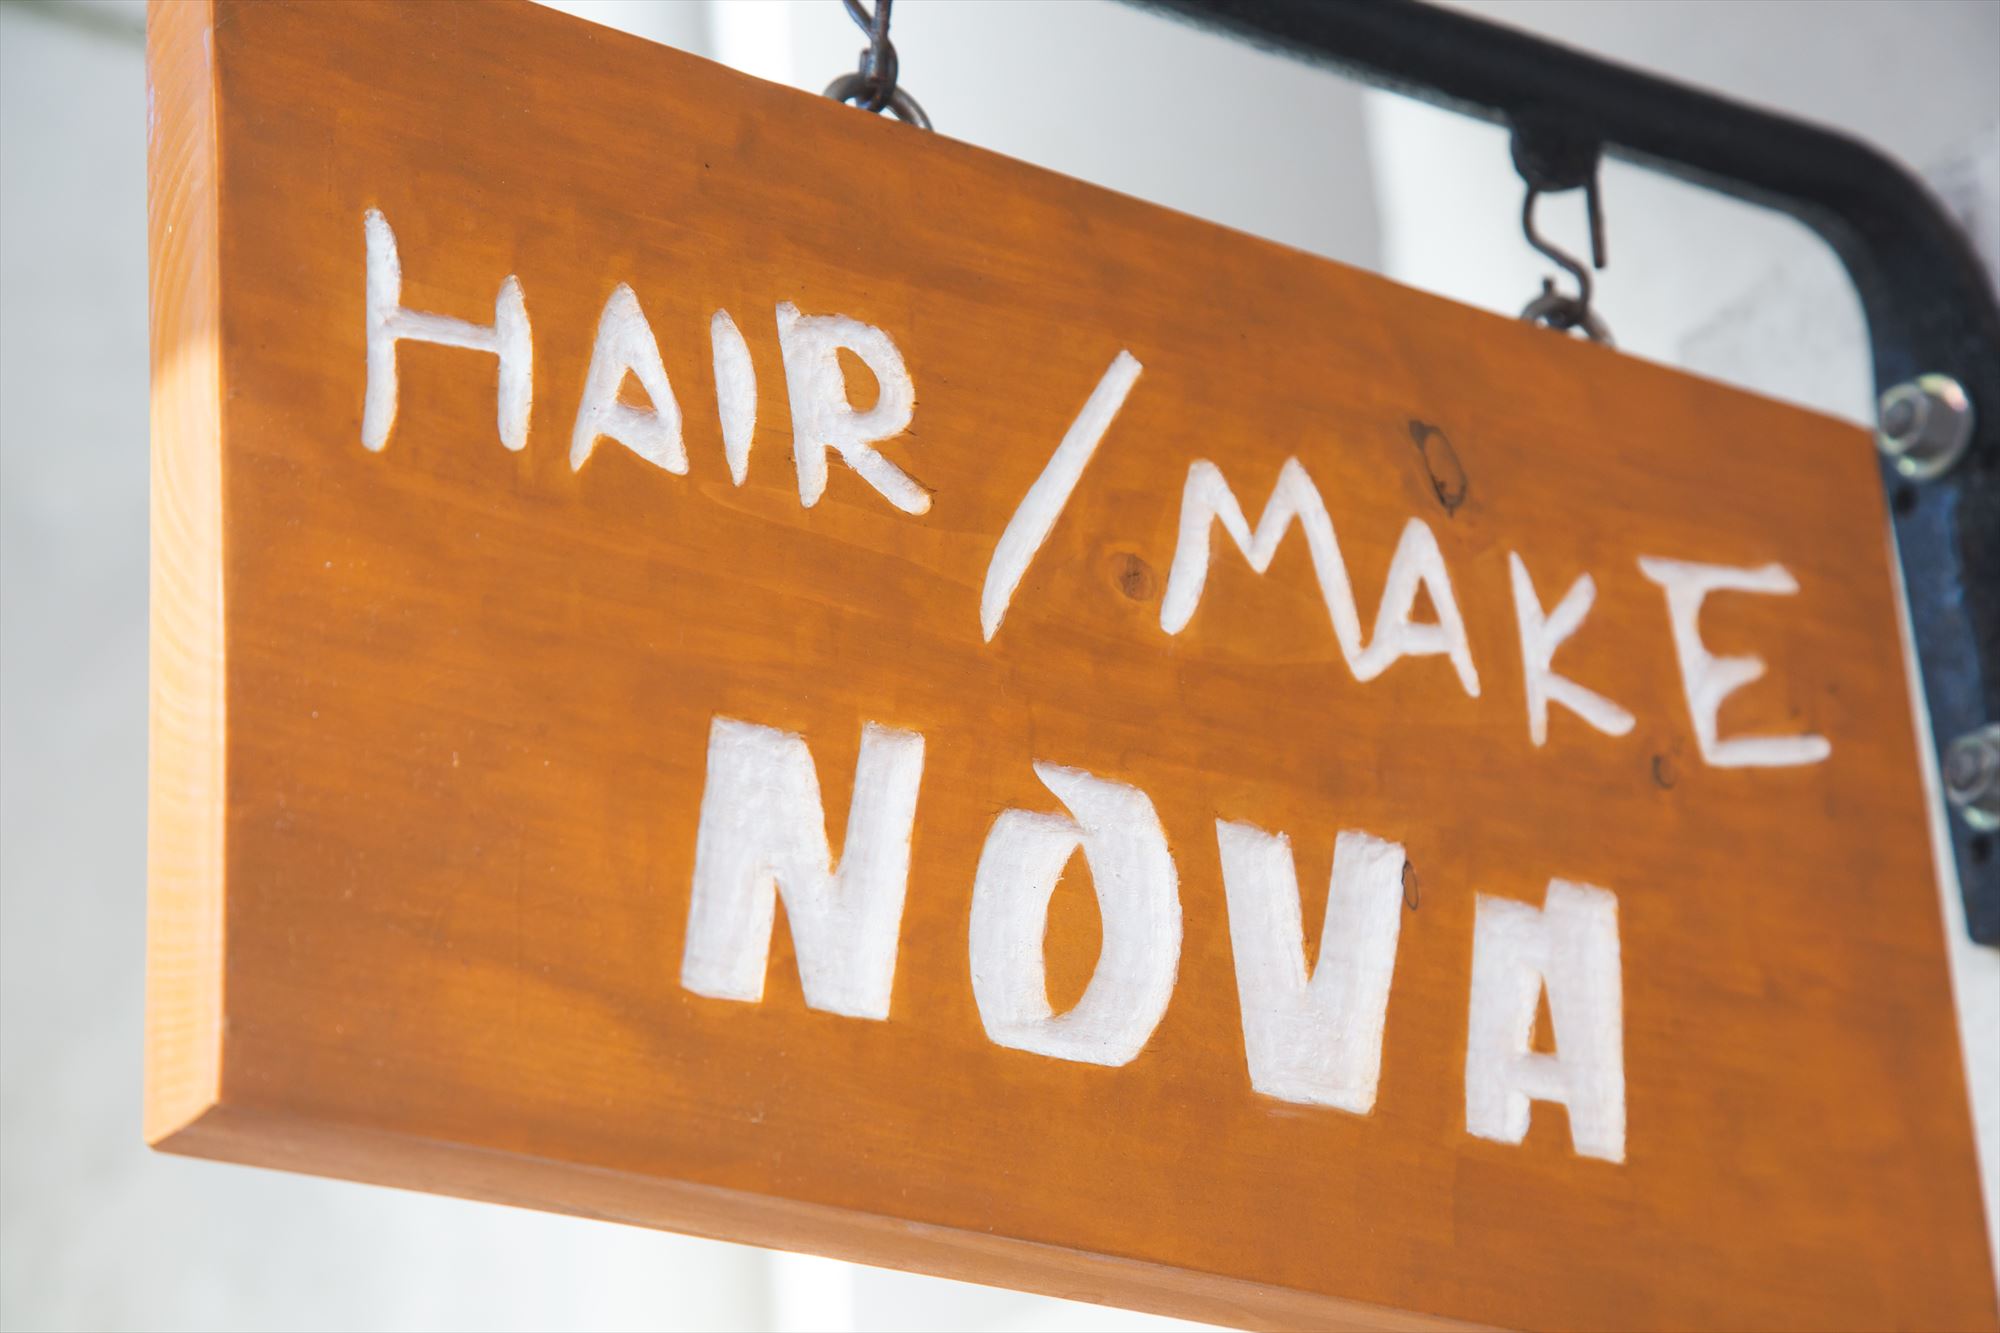 HAIR/MAKE NOVA